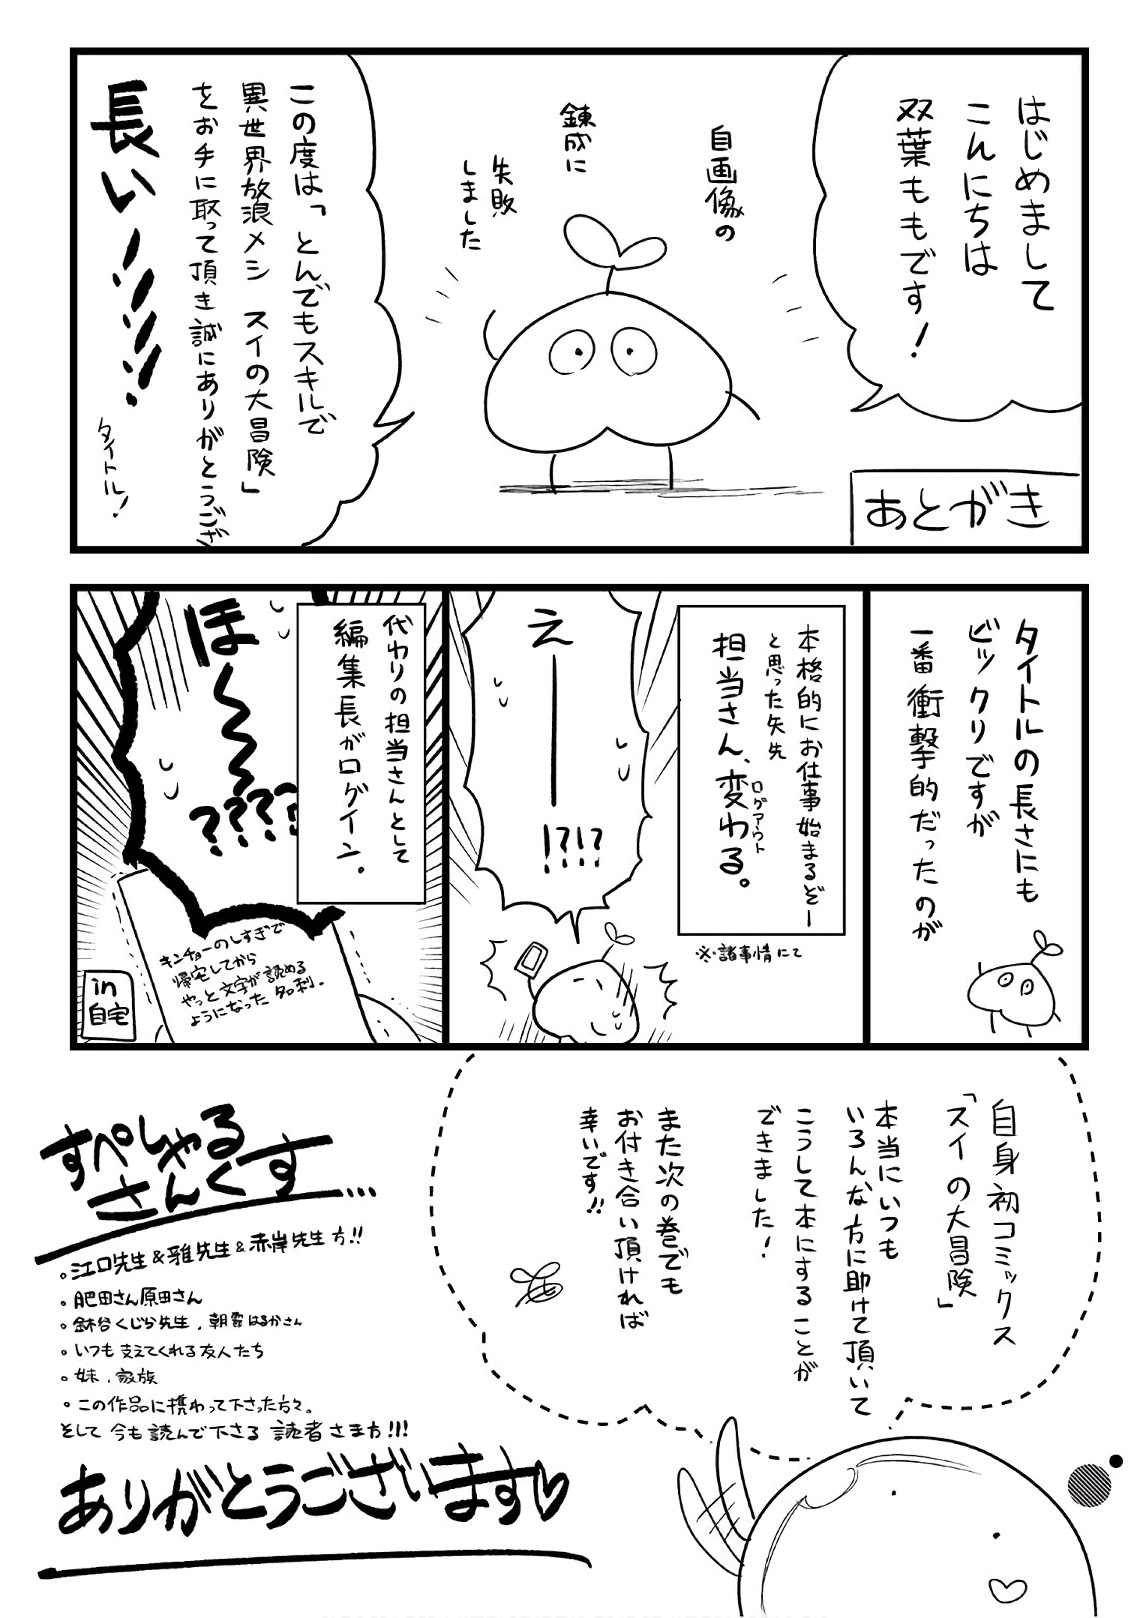 Tondemo Skill de Isekai Hourou Meshi: Sui no Daibouken Vol. 1 Ch. 8.5 Omake